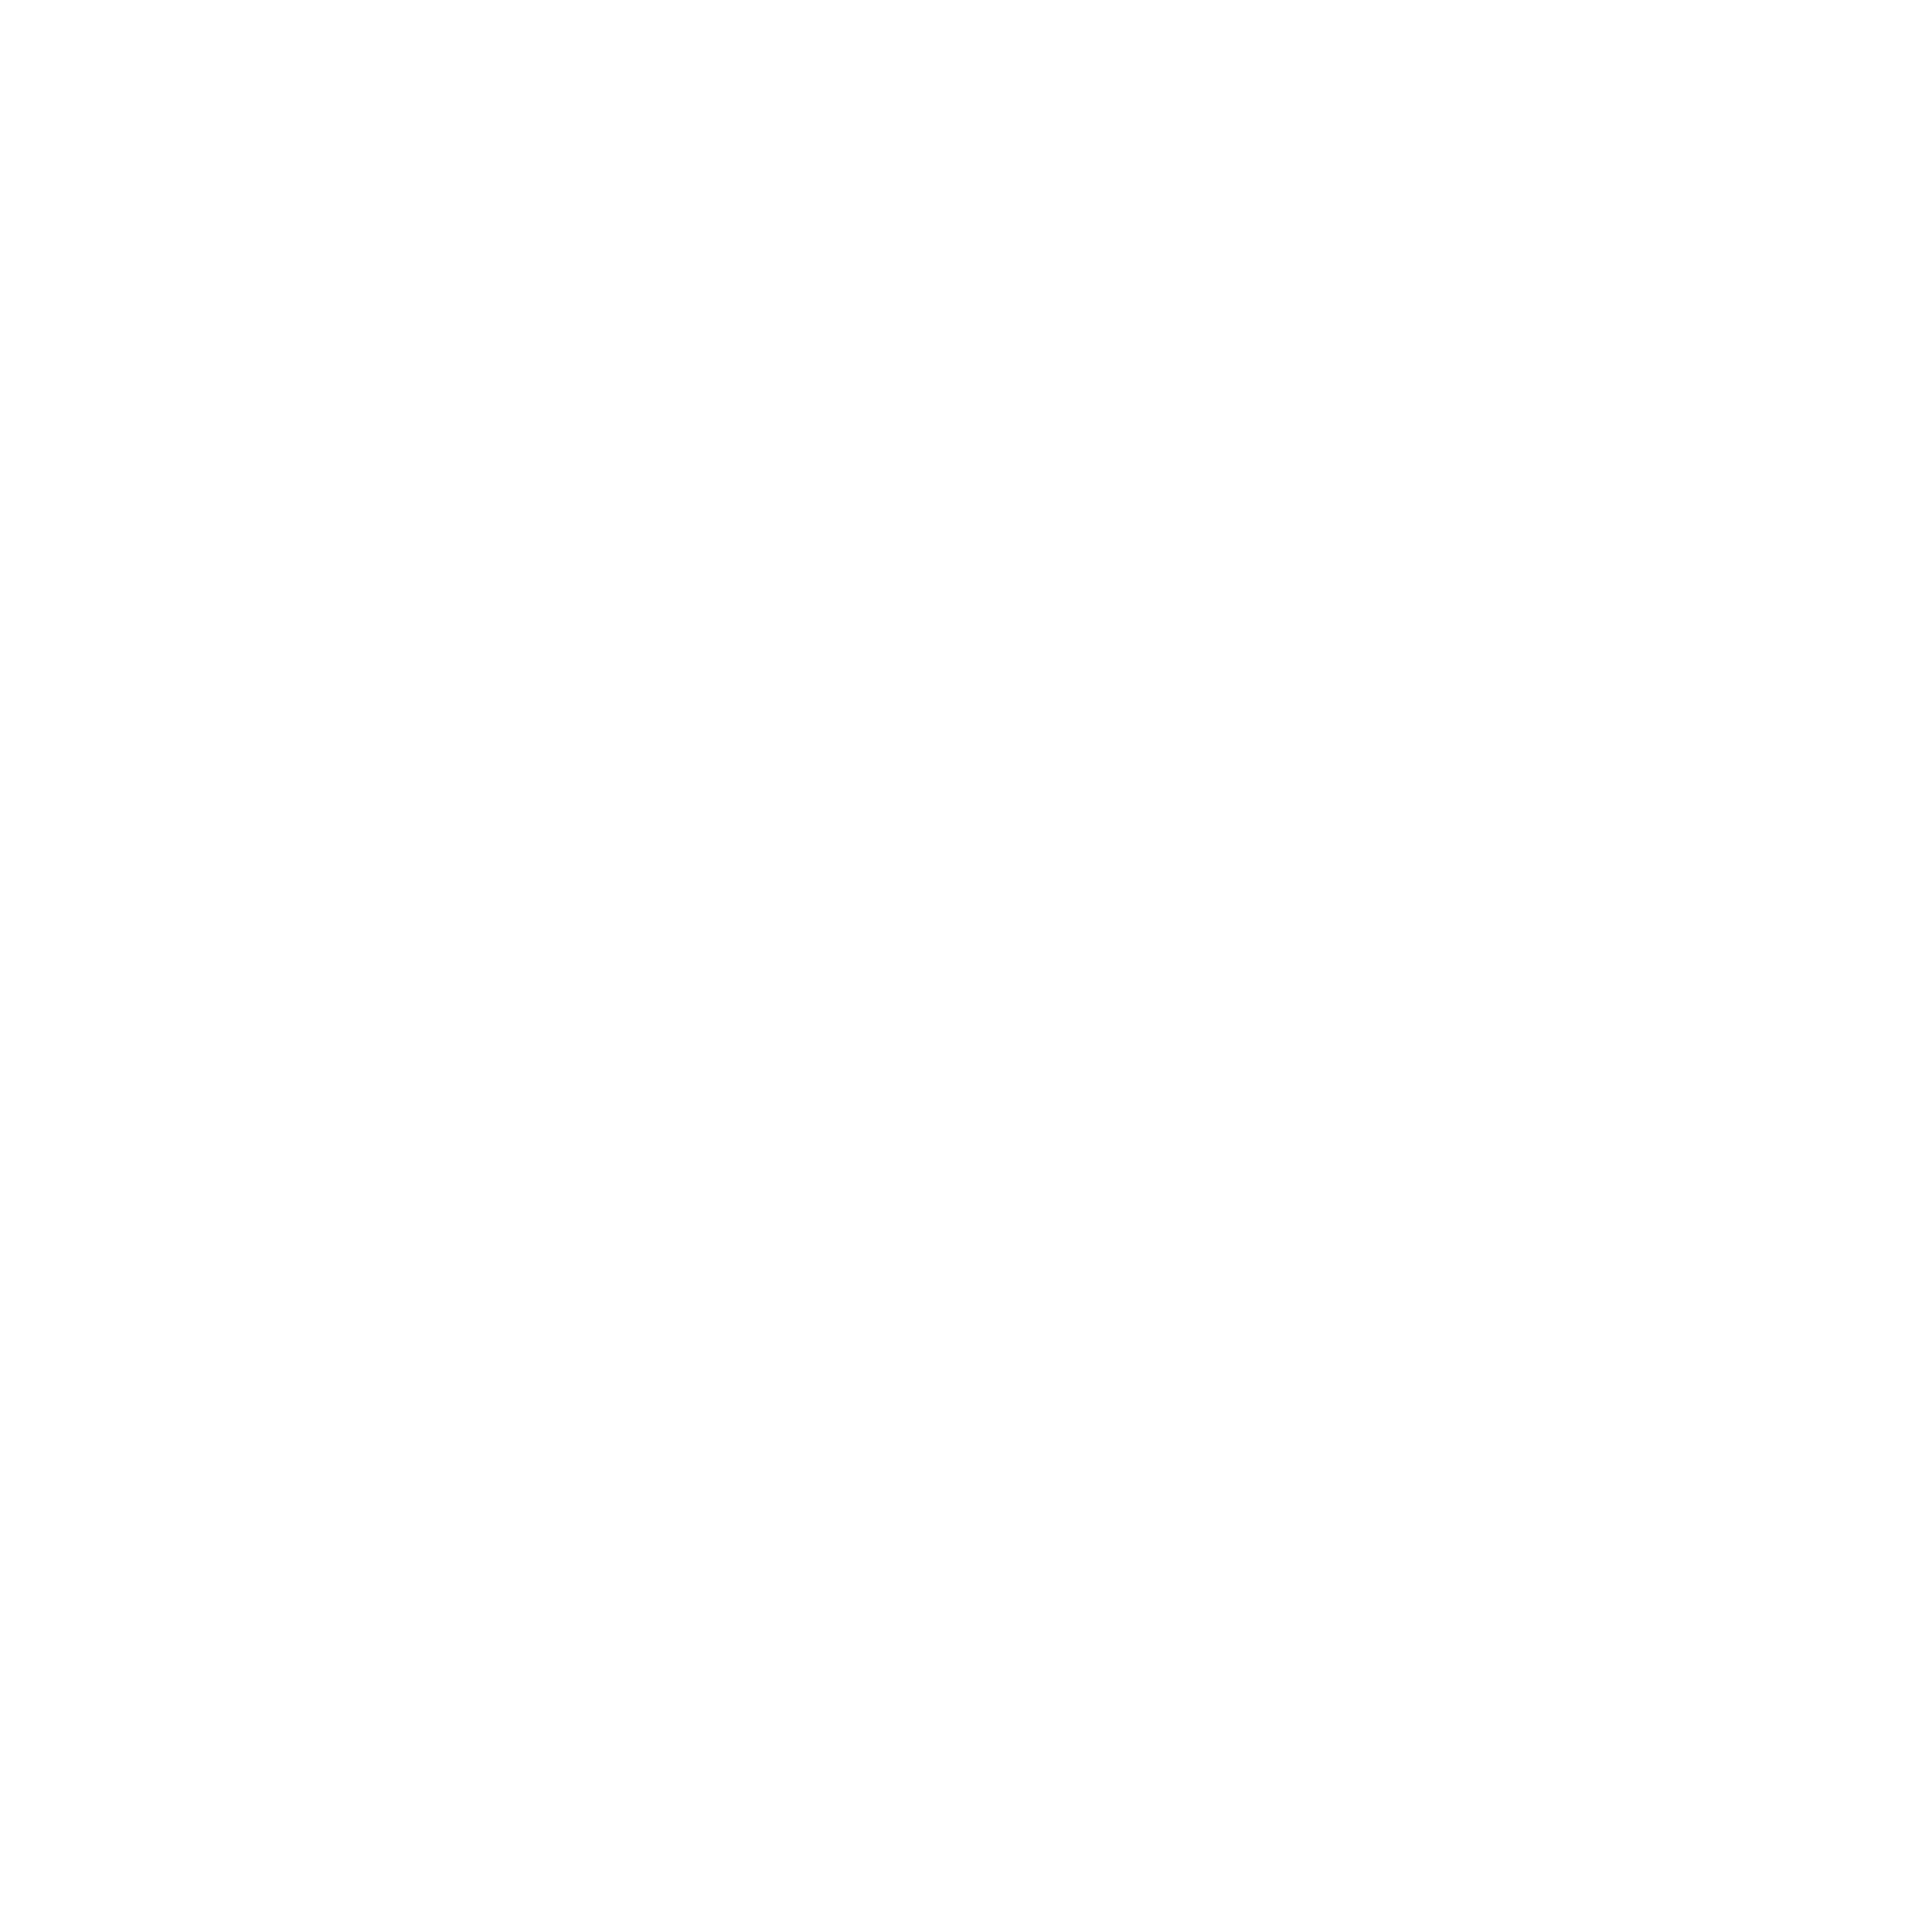 Ferrara Summer Festival